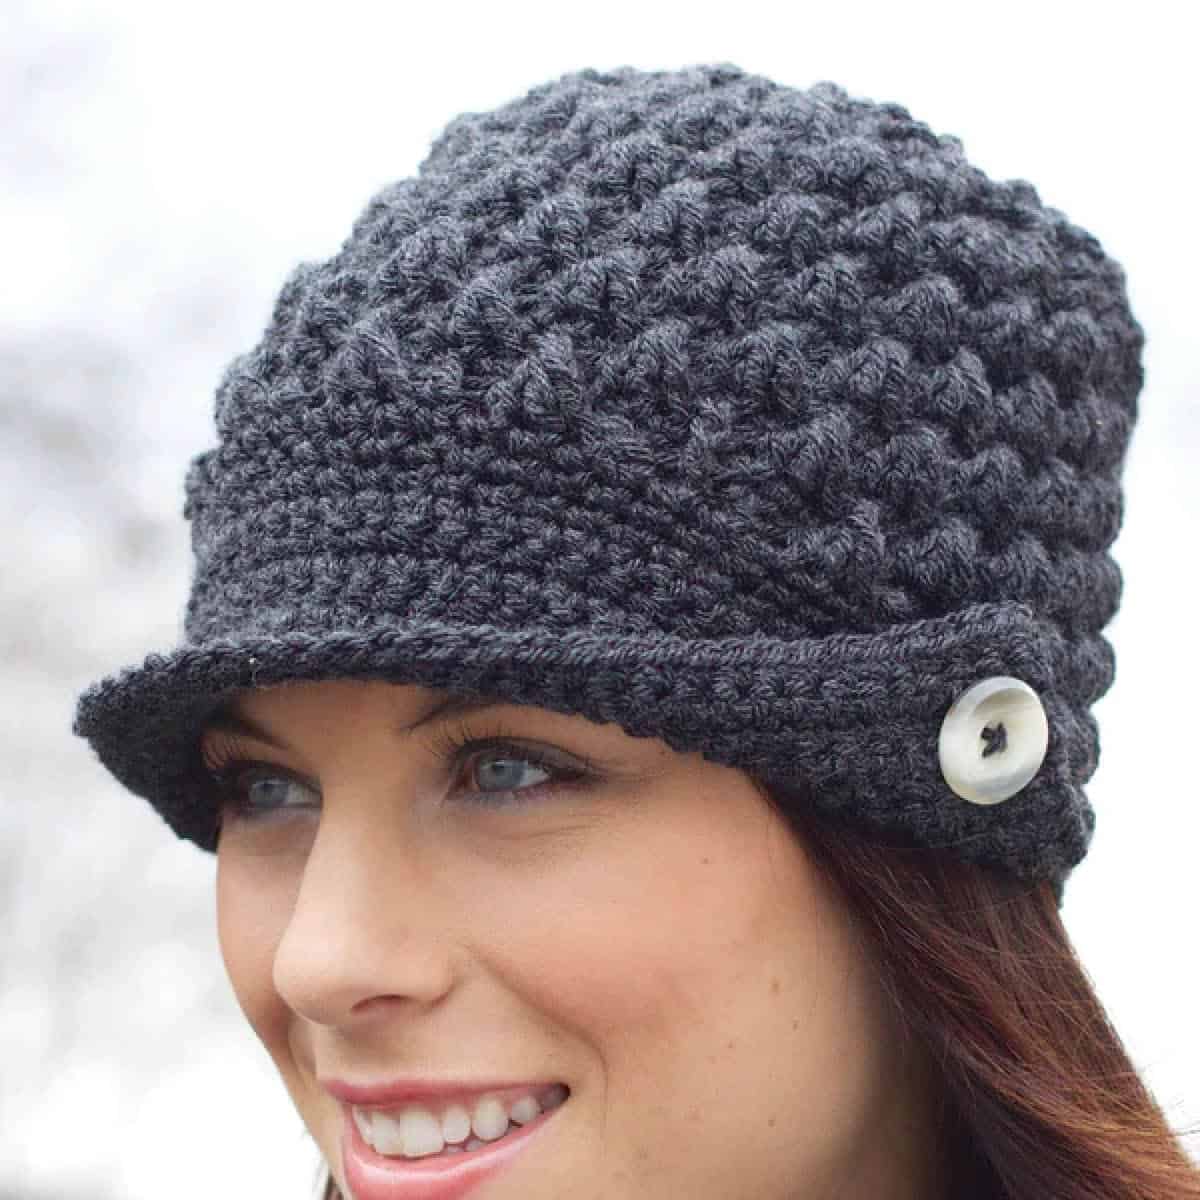 Crochet Woman's Peak Hat Pattern